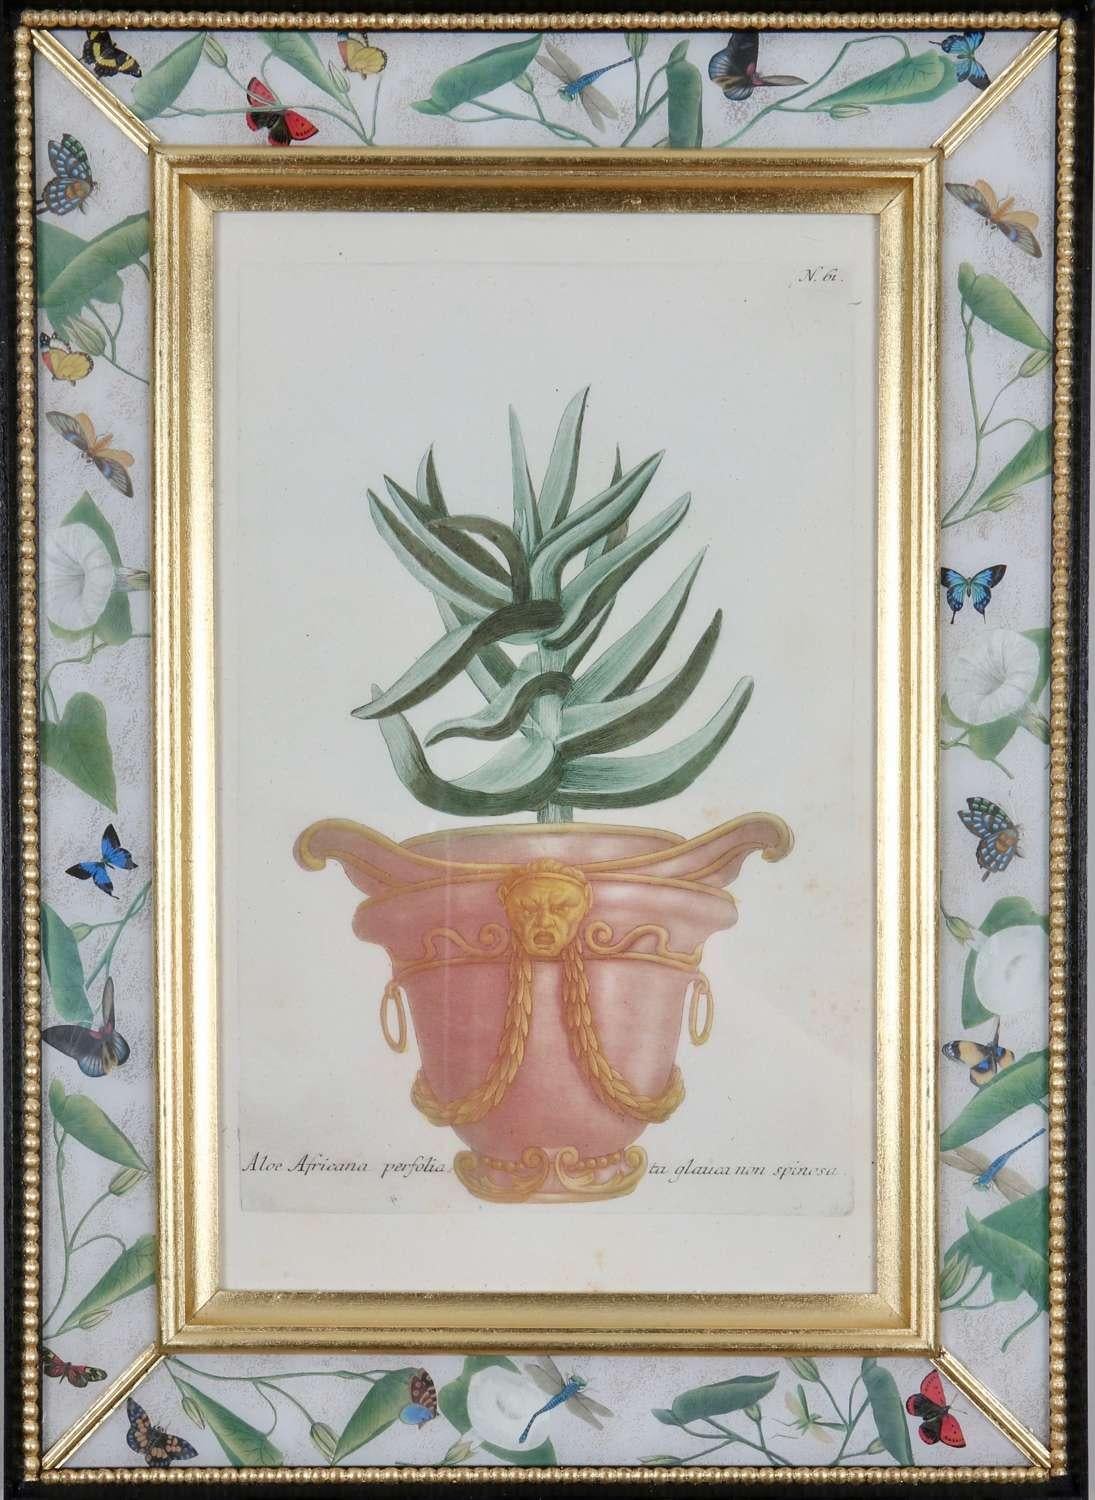 Handkolorierte Schabkunststiche von dekorativen Urnen mit Aloen und Kakteen aus: "Phytanthoza Iconographia",  um 1739, präsentiert in handgefertigten, paketvergoldeten, ebonisierten und dekalkomanierten Rahmen. 

Johann Weinmann (1683-1741), ein